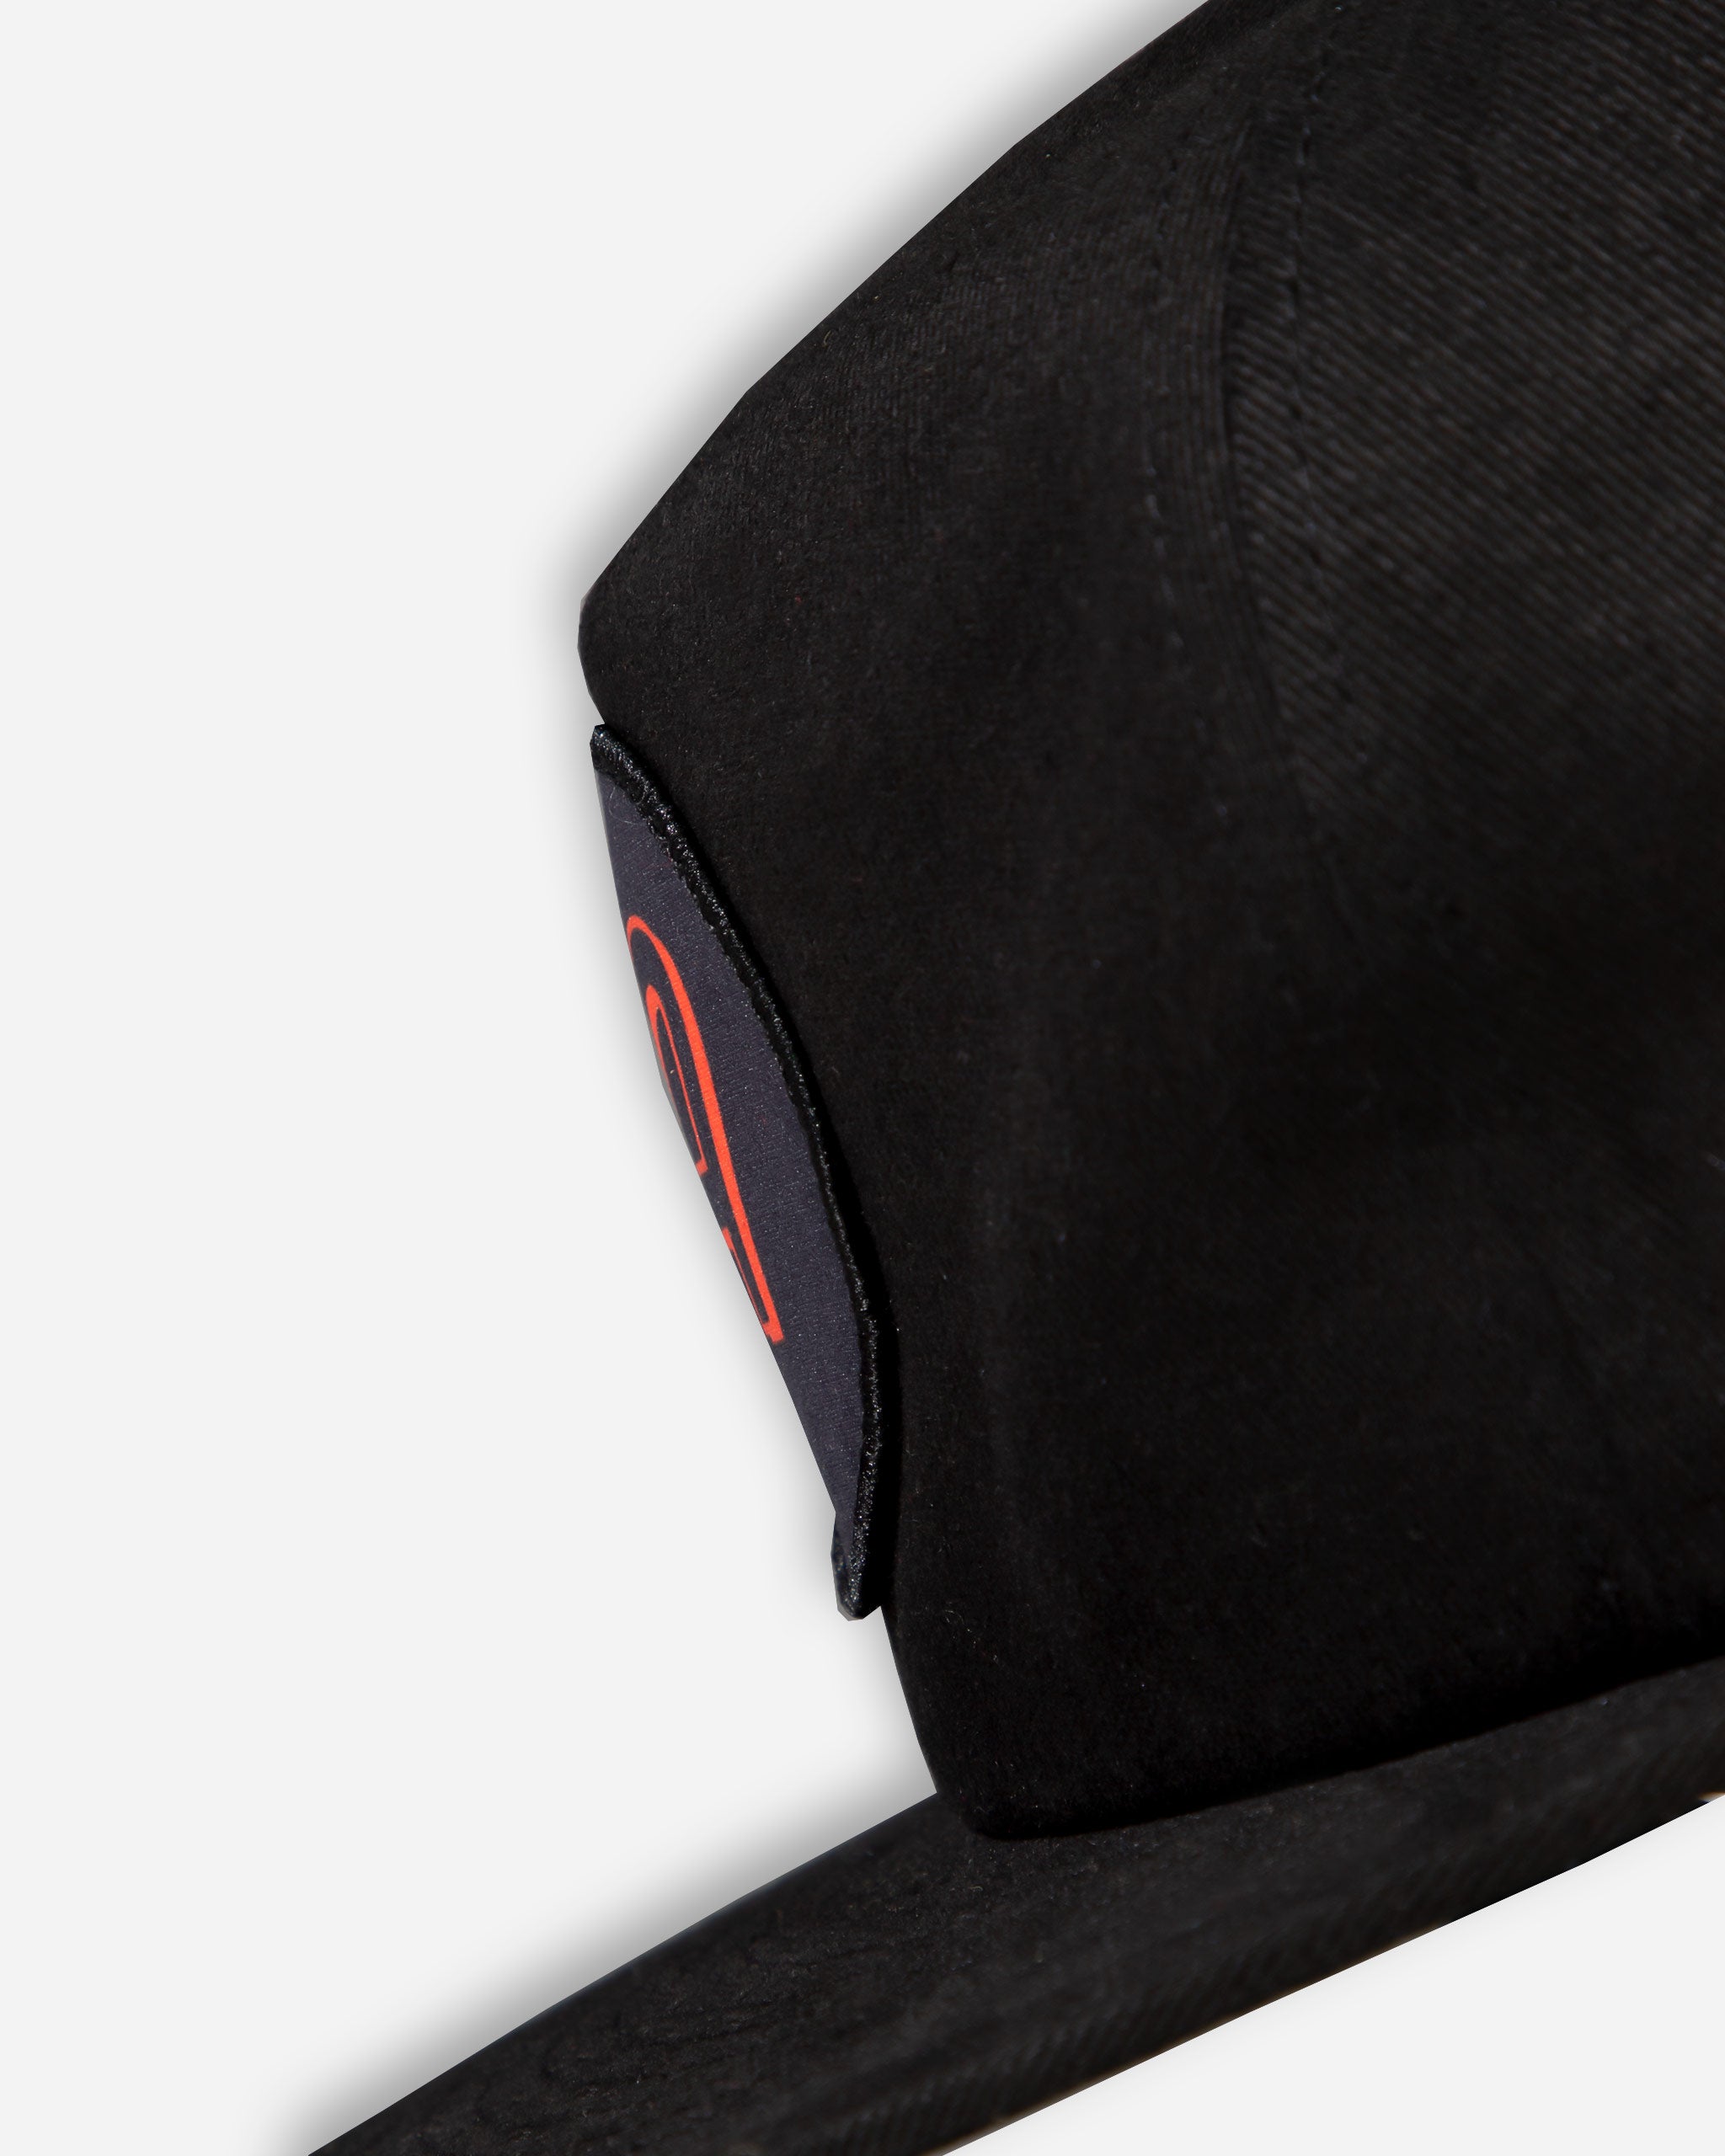 Adam's Black 5 Panel Flat Bill Hat